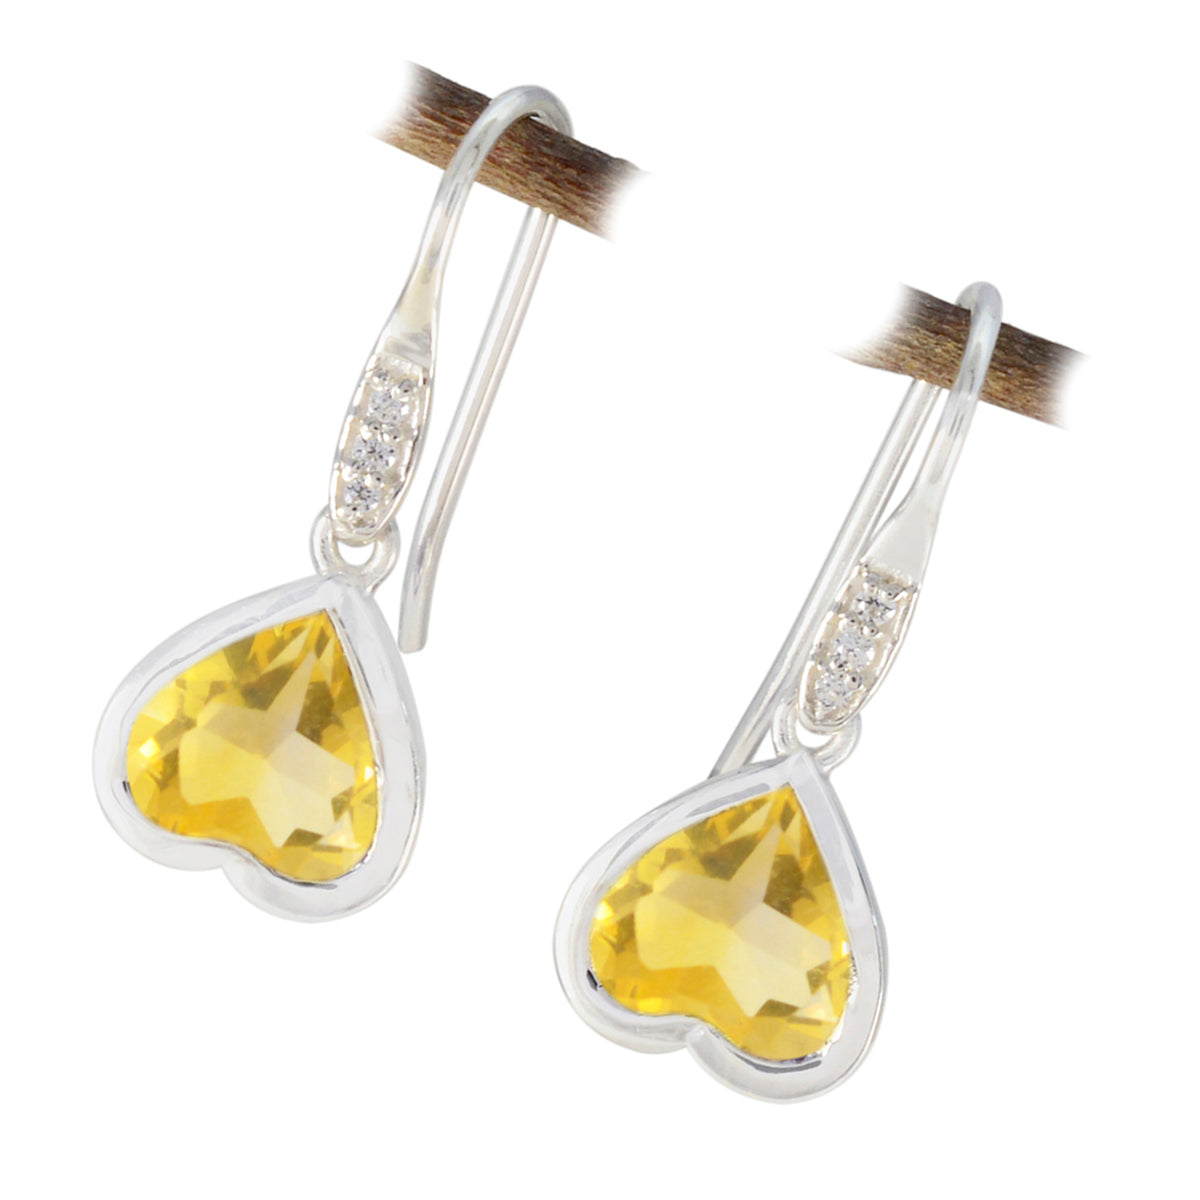 Riyo esthétique 925 boucle d'oreille en argent sterling pour les femmes boucle d'oreille citrine réglage de la boucle d'oreille jaune boucle d'oreille pendante